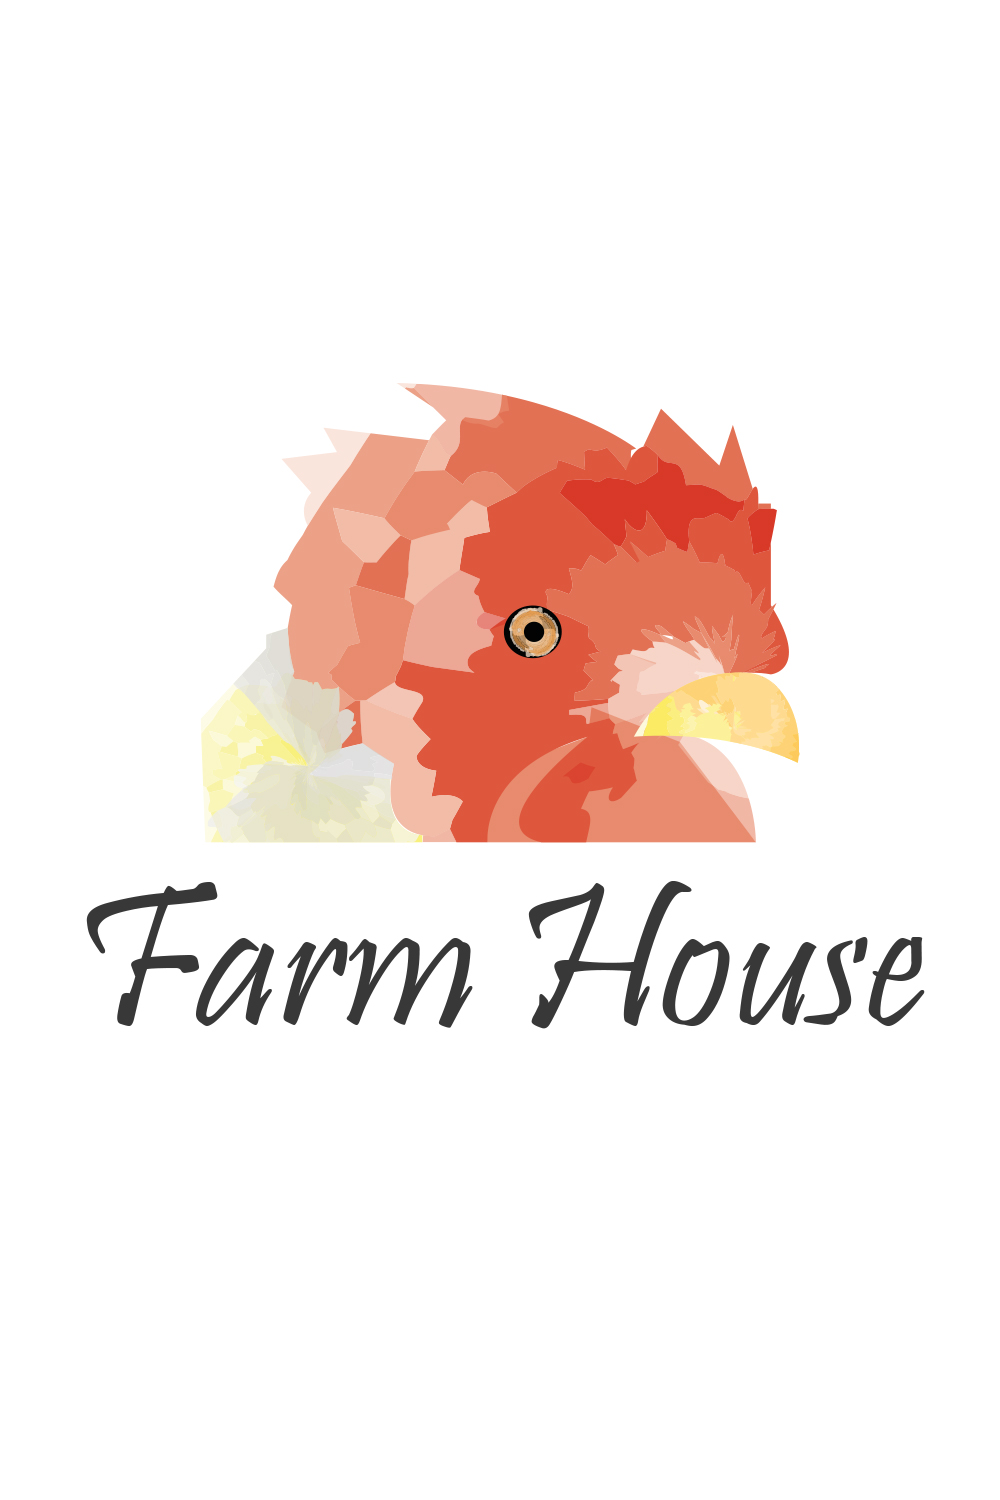 Roaster (Farm house) Watercolor Unique logo design pinterest preview image.